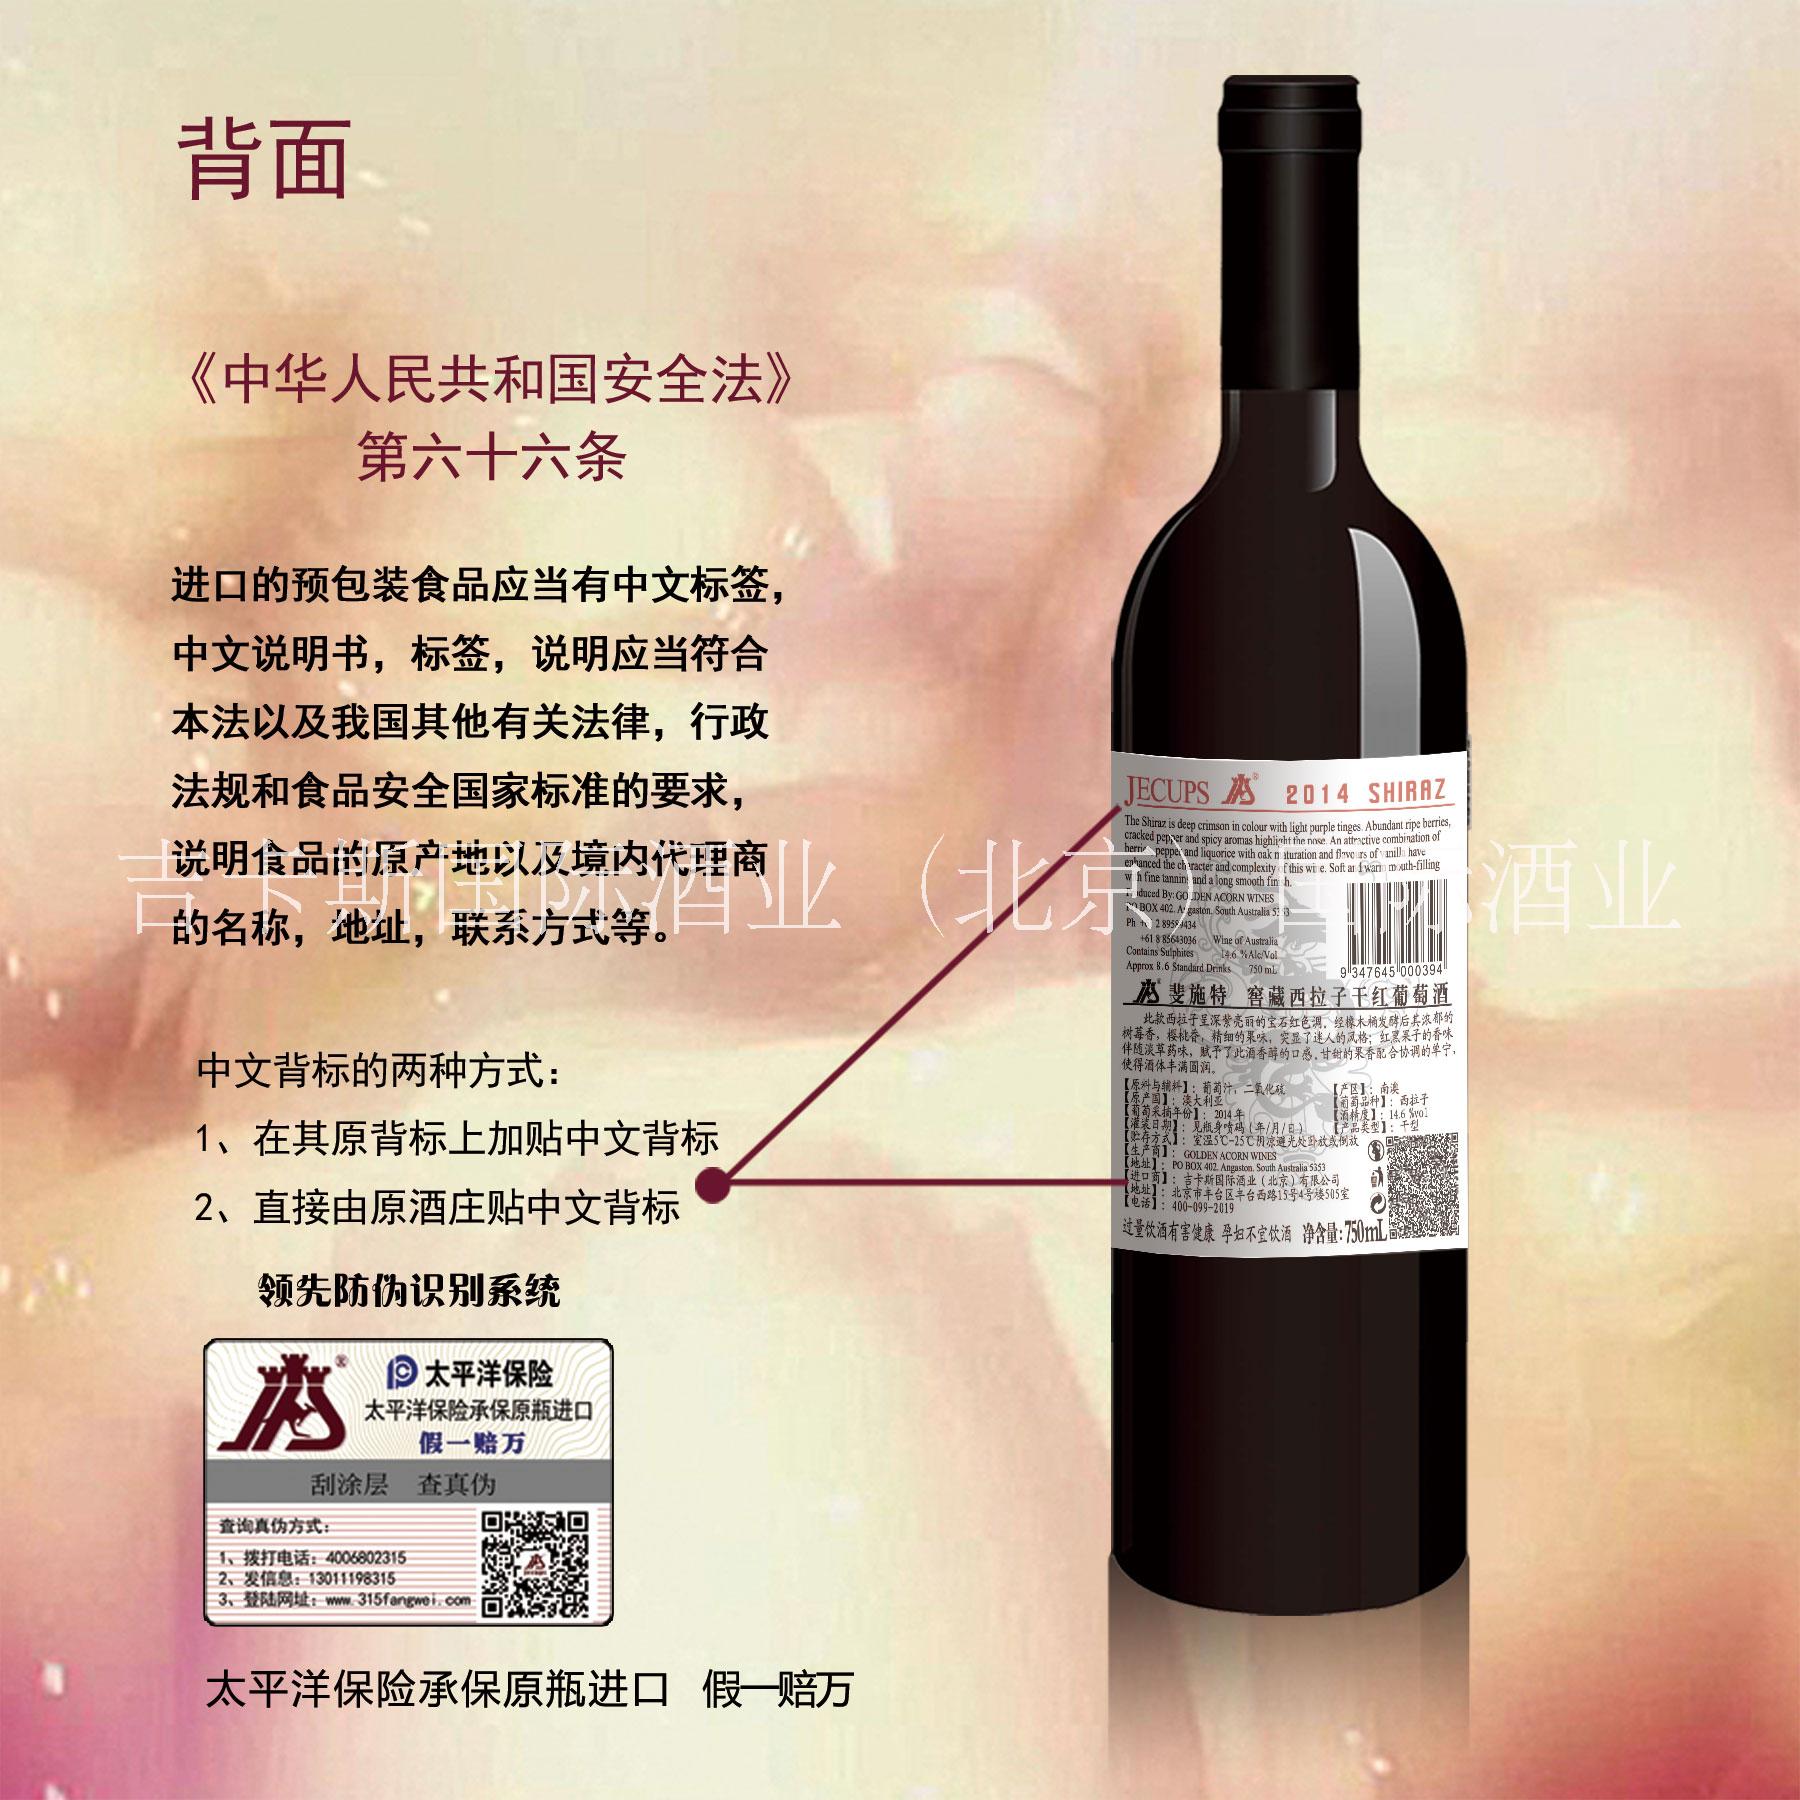 北京市斐施特窖藏西拉干红厂家斐施特窖藏西拉干红 澳洲进口红酒、富伦谷酒庄